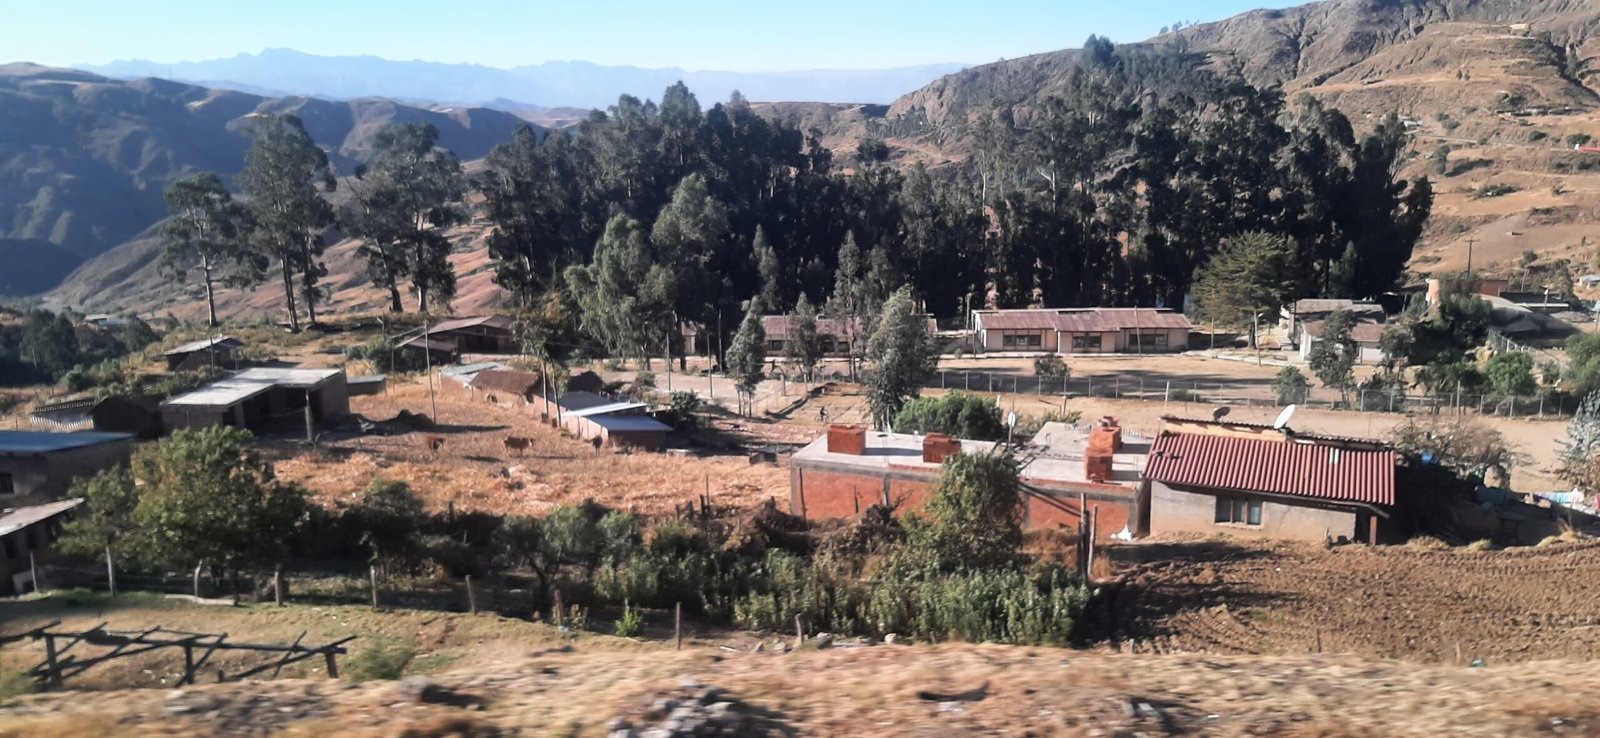 Un pequeño pueblo en un valle de la región templada de Bolivia.